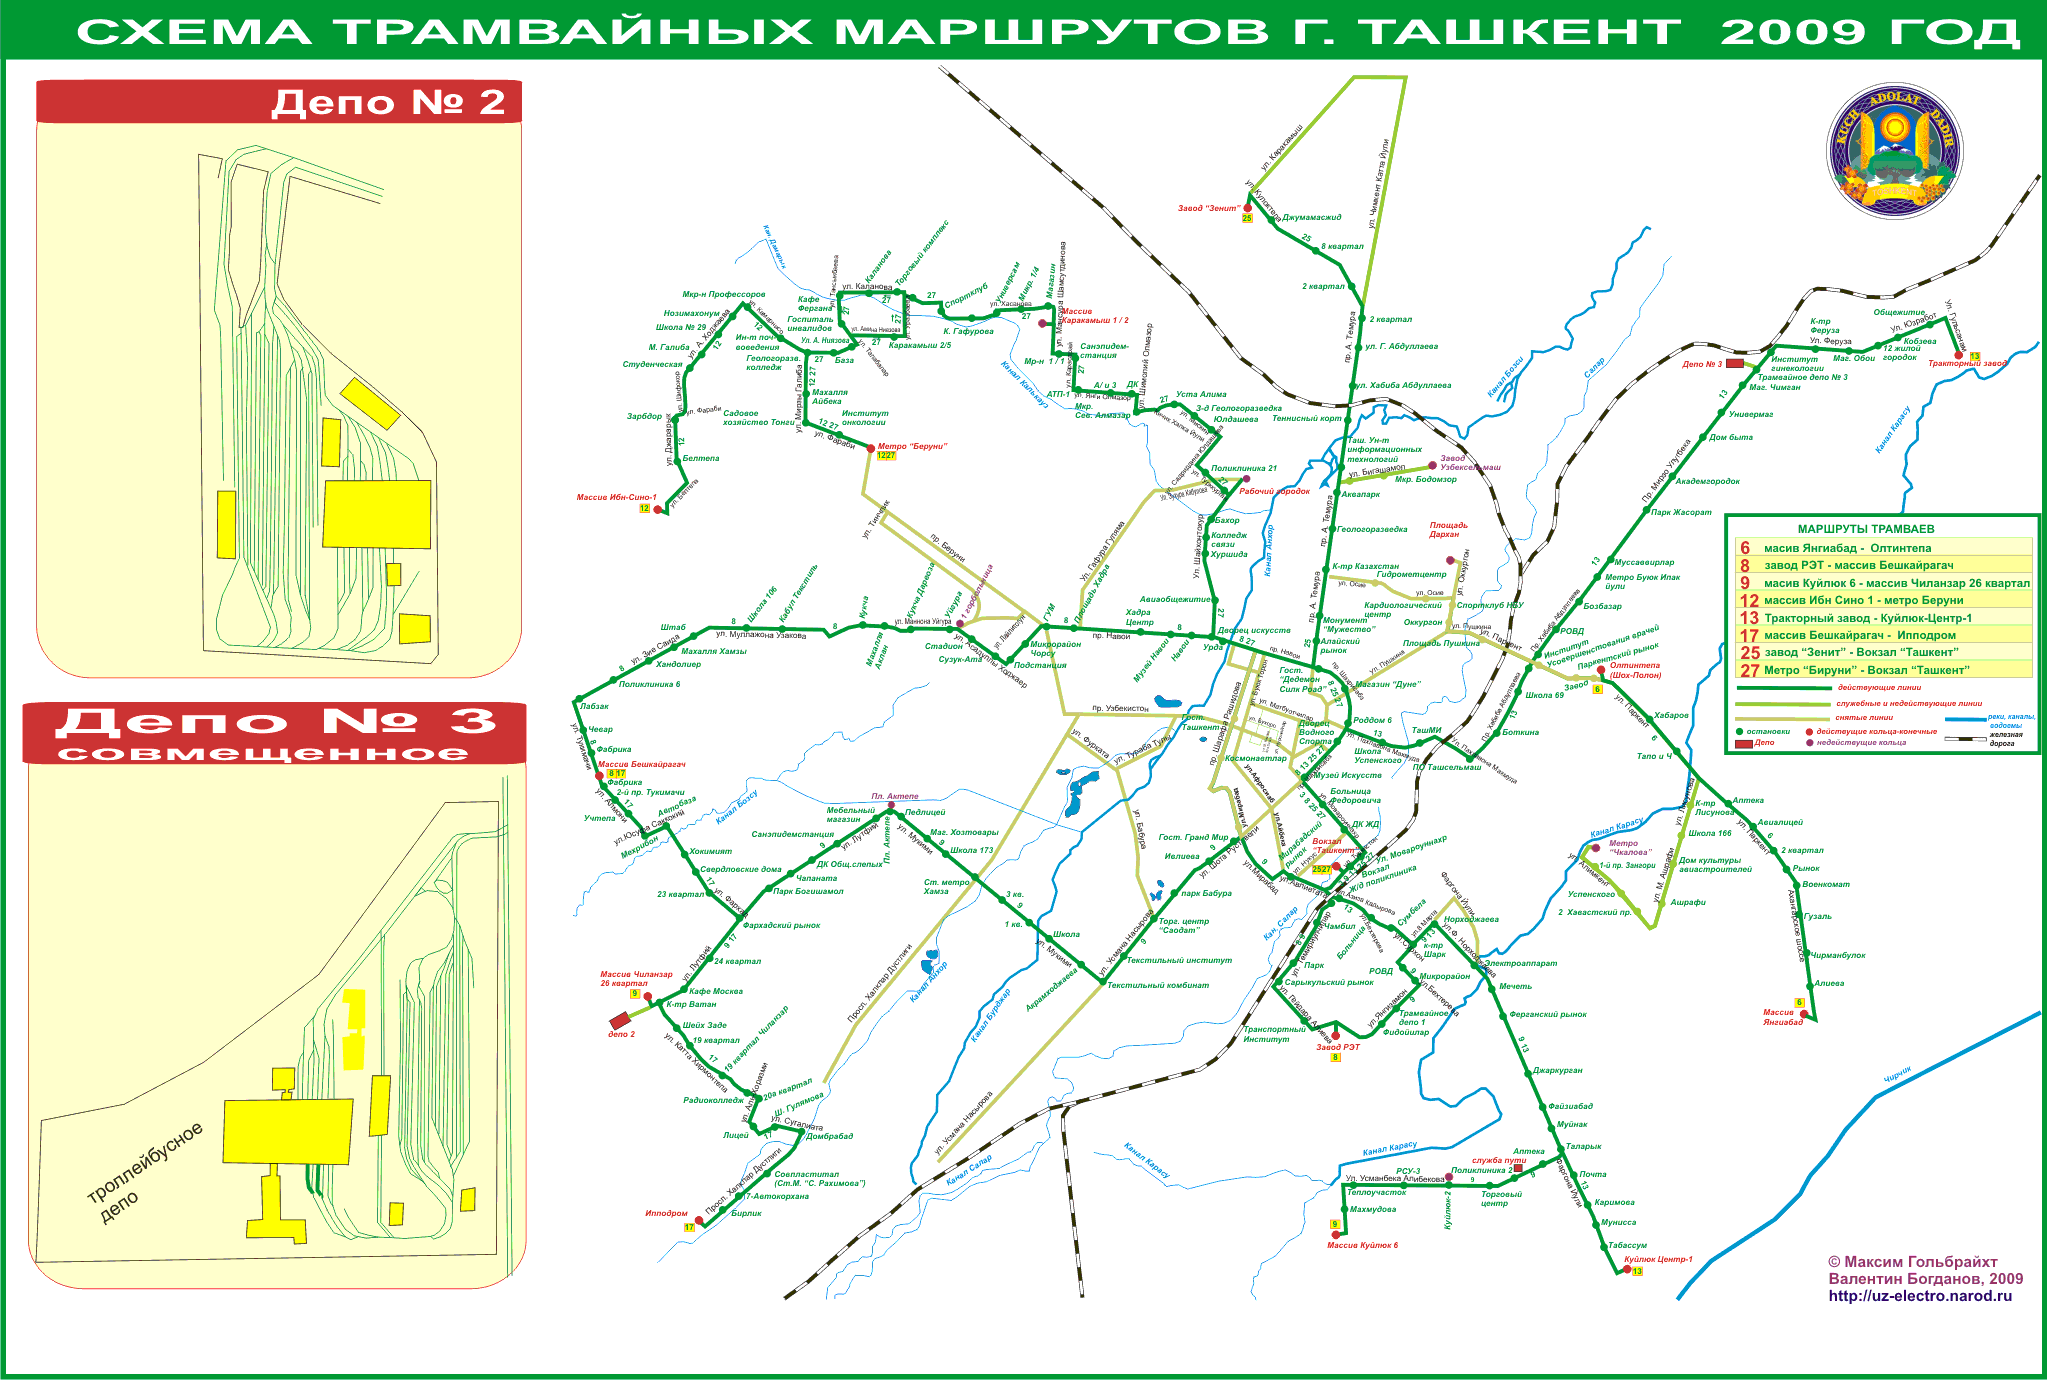 Tashkent — Maps